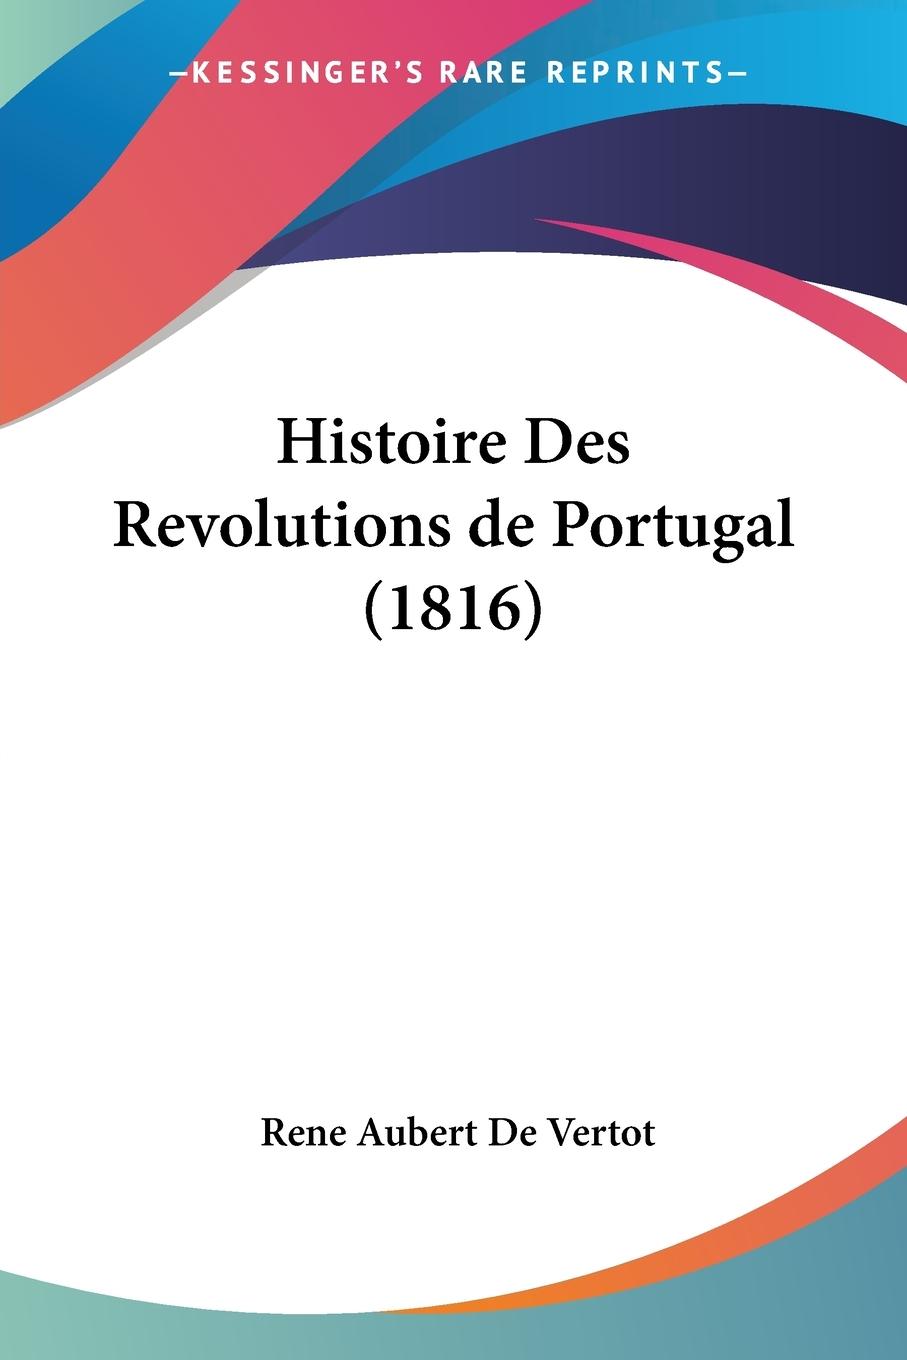 Histoire Des Revolutions de Portugal (1816) - De Vertot, Rene Aubert